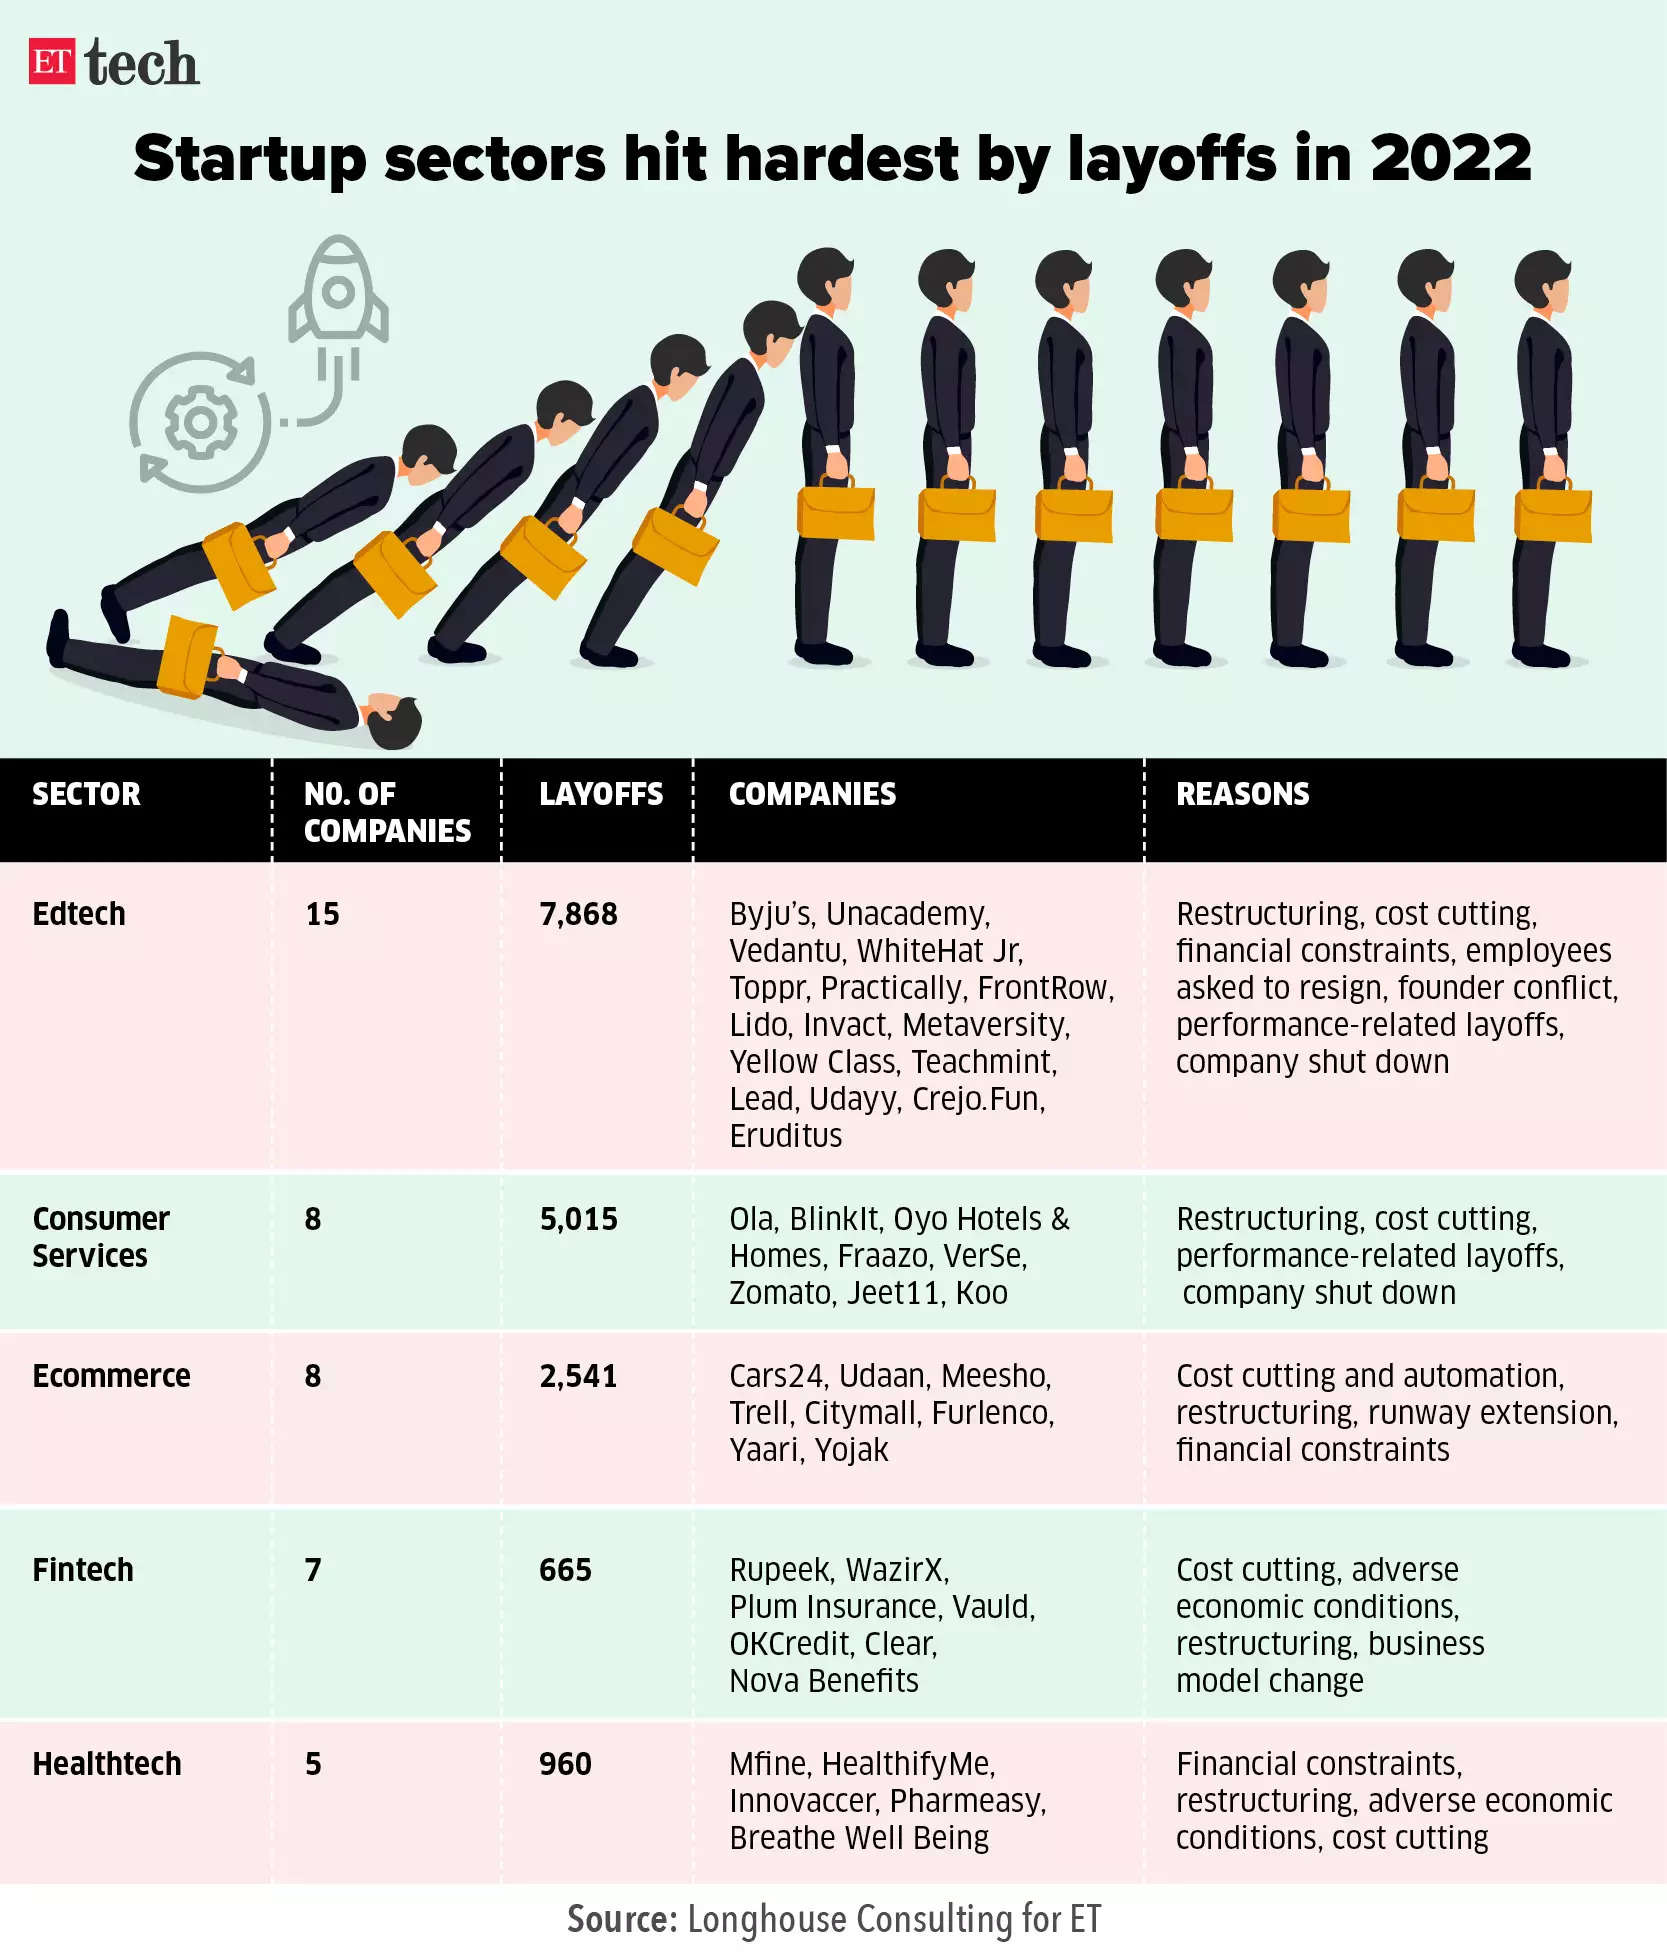 startups hit hardest by layoffs